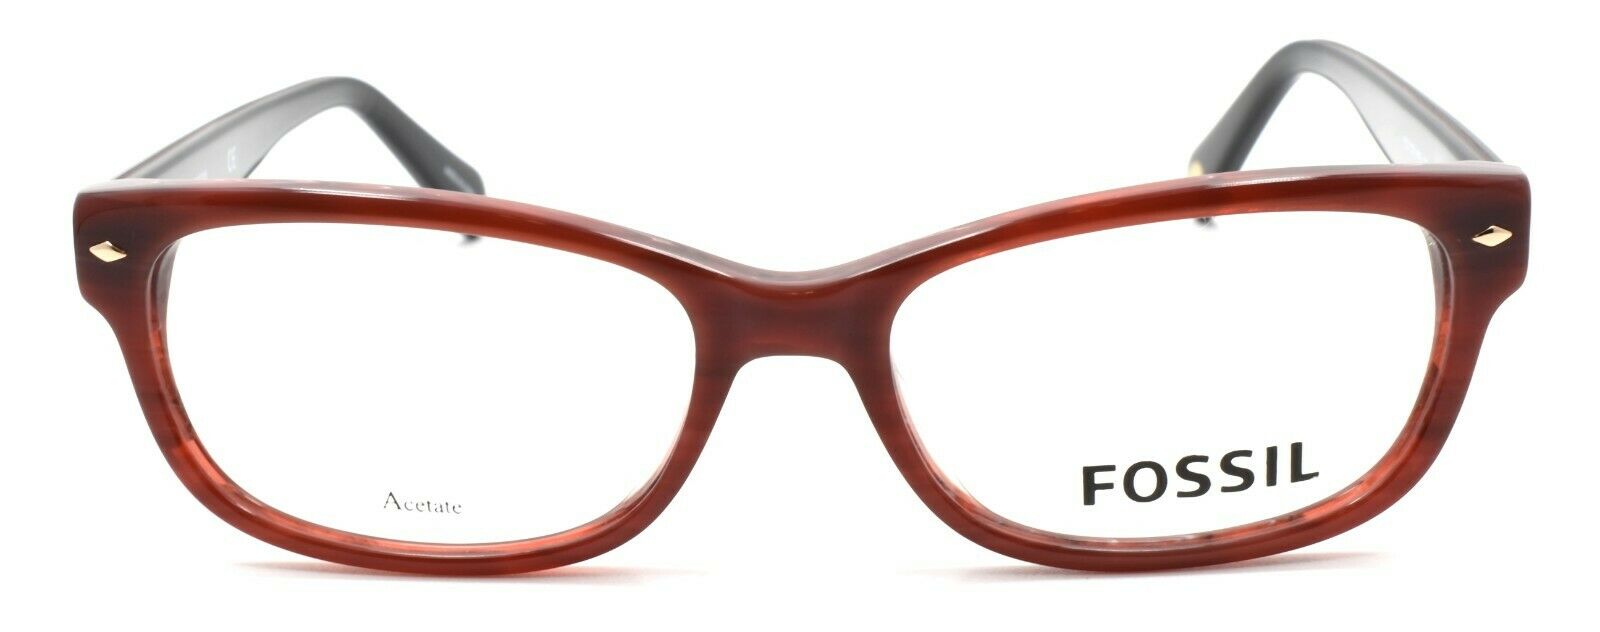 2-Fossil FOS 7009 K4G Women's Eyeglasses Frames 50-16-140 Burgundy Horn-762753627926-IKSpecs